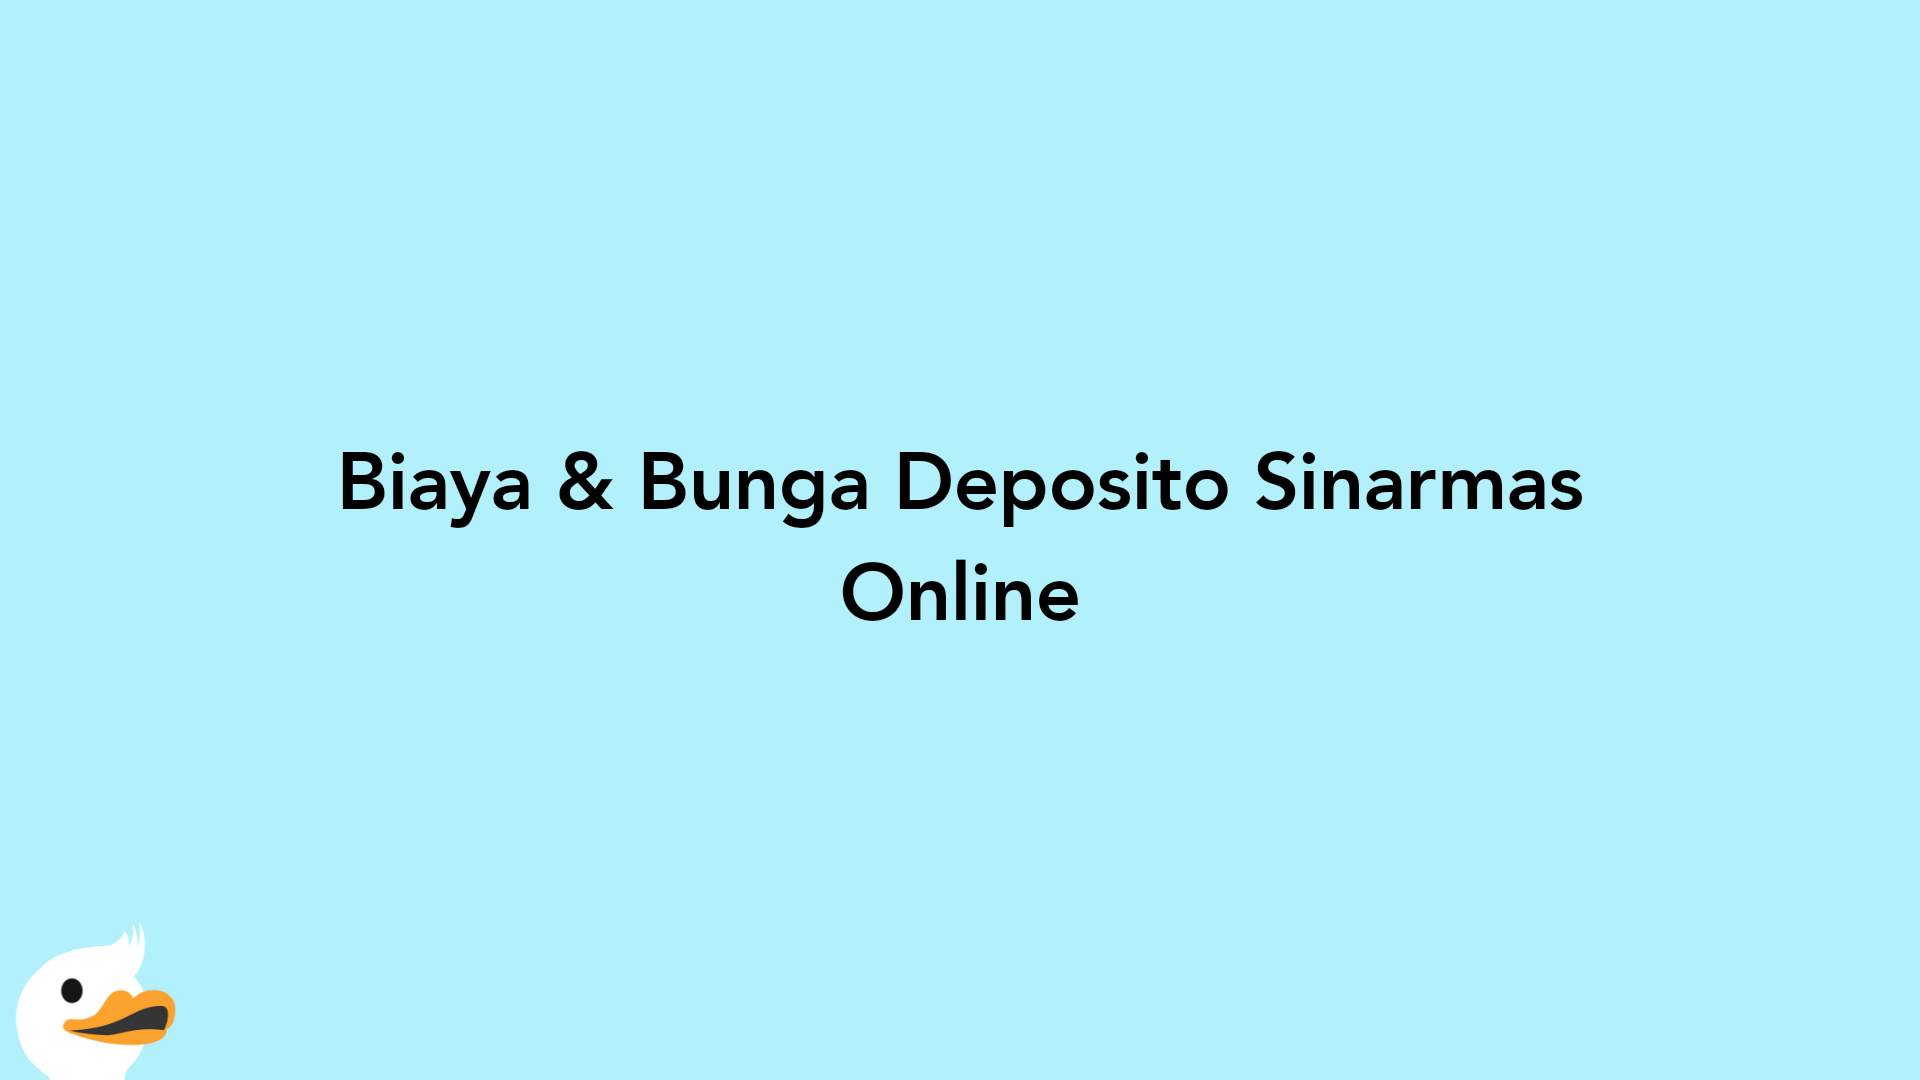 Biaya & Bunga Deposito Sinarmas Online